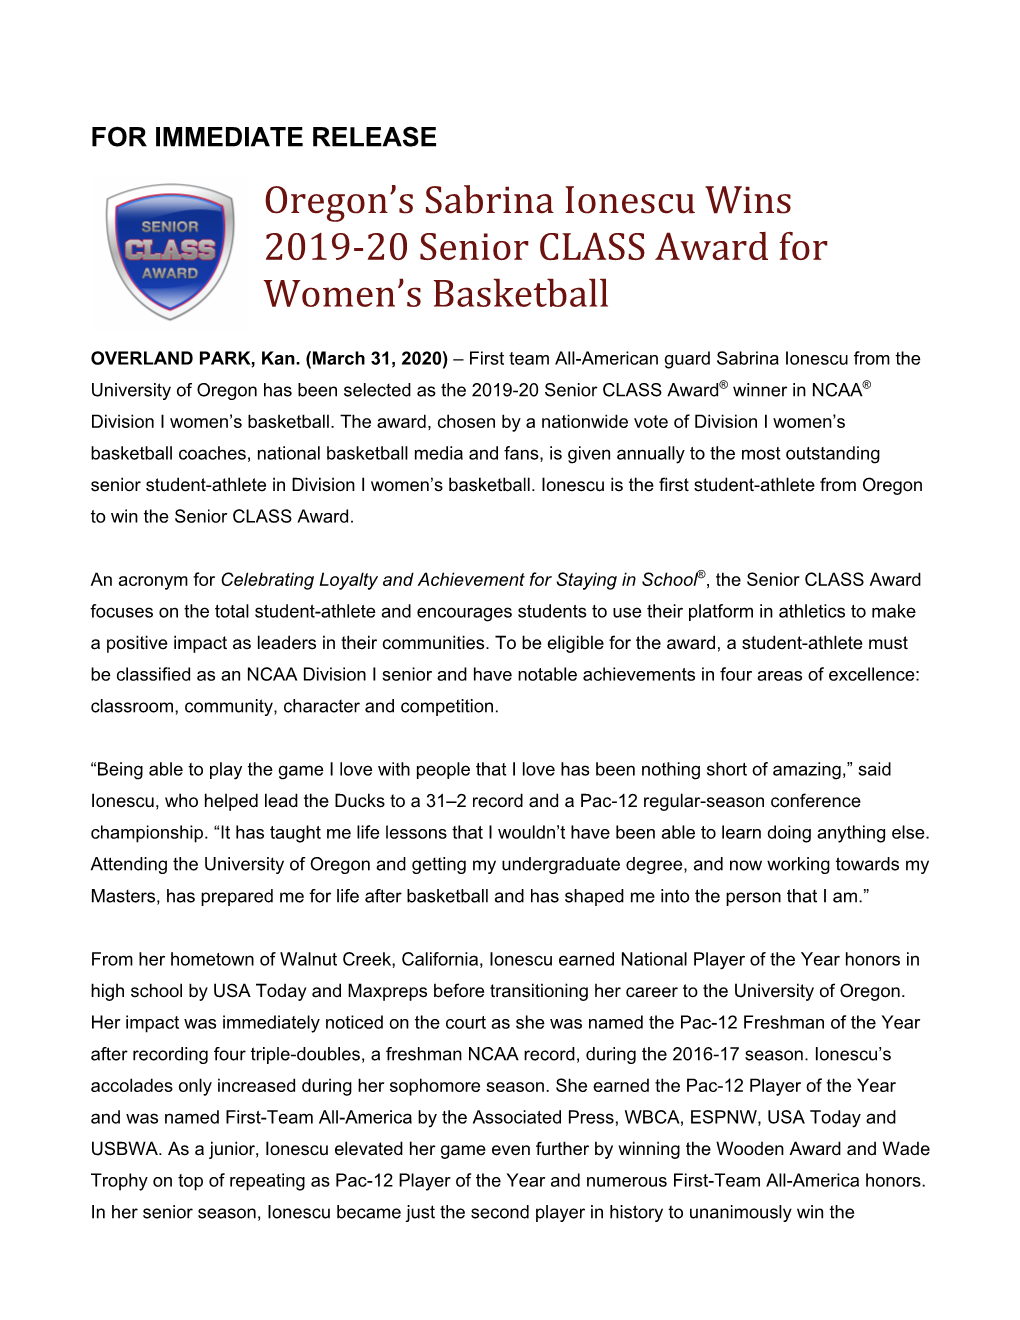 Oregon's Sabrina Ionescu Wins 2019-20 Senior CLASS Award For